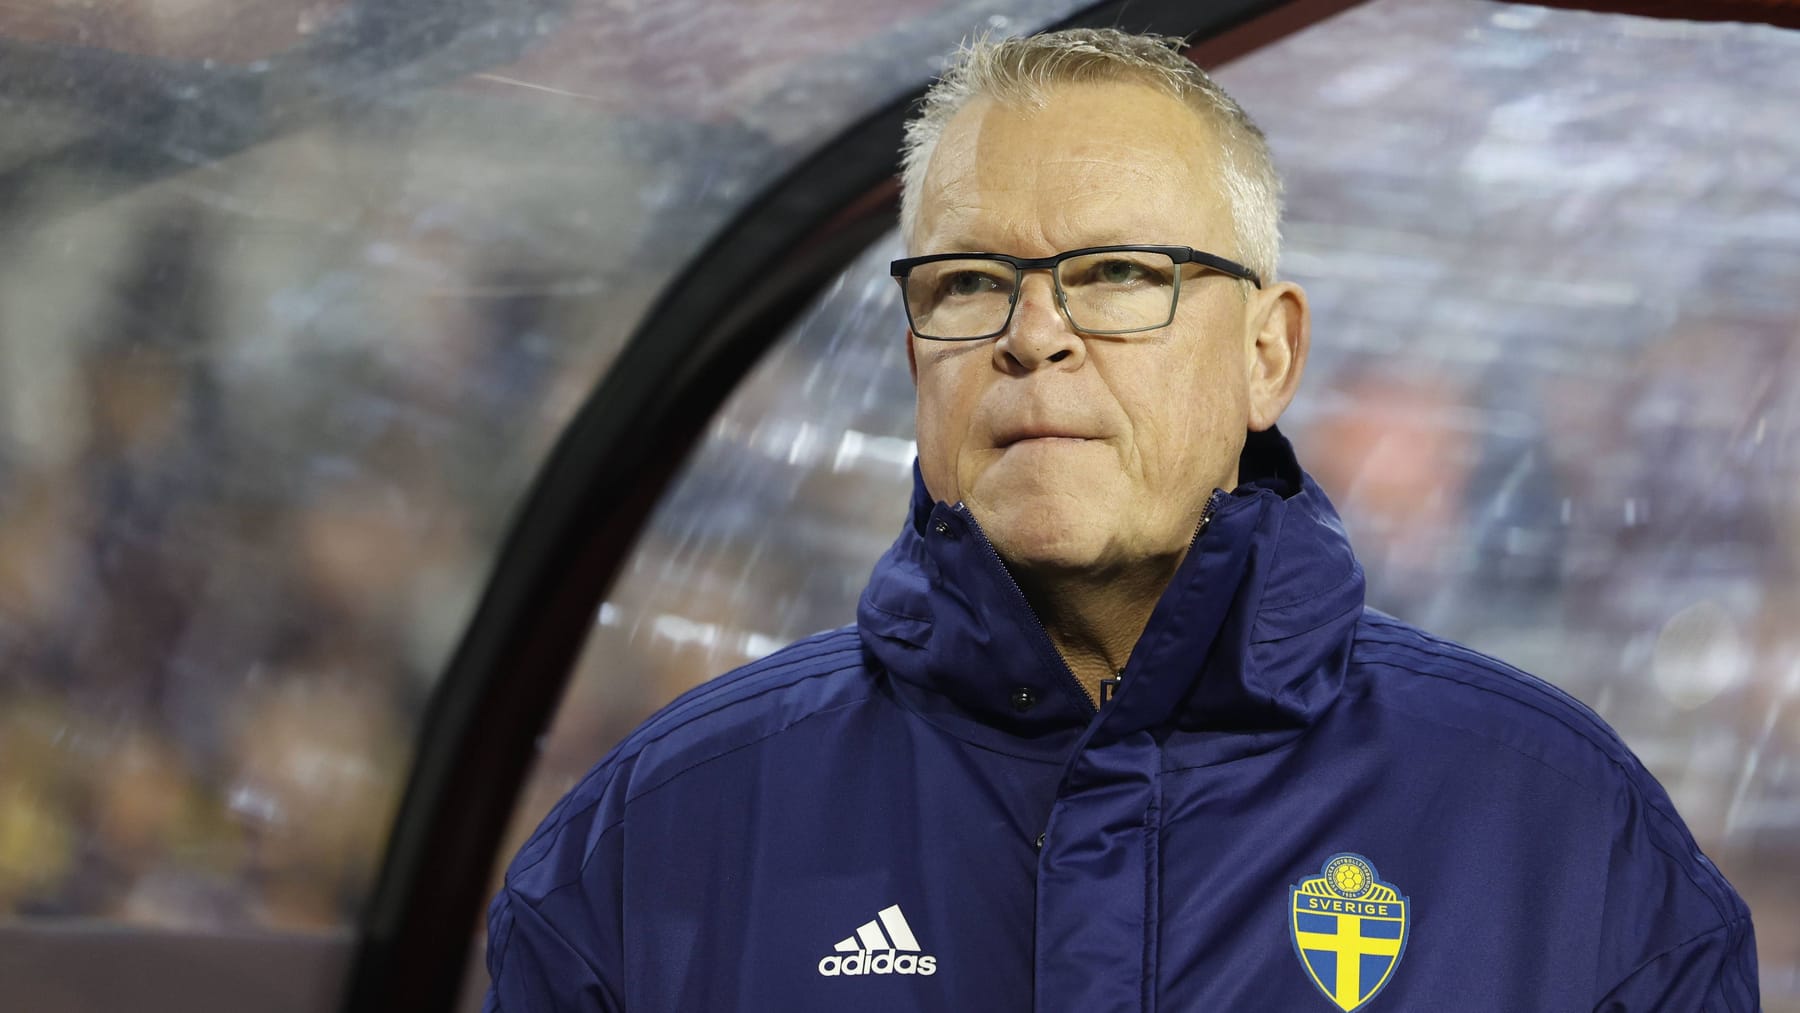 Zweden-coach Andersson reageert op de aanval in België